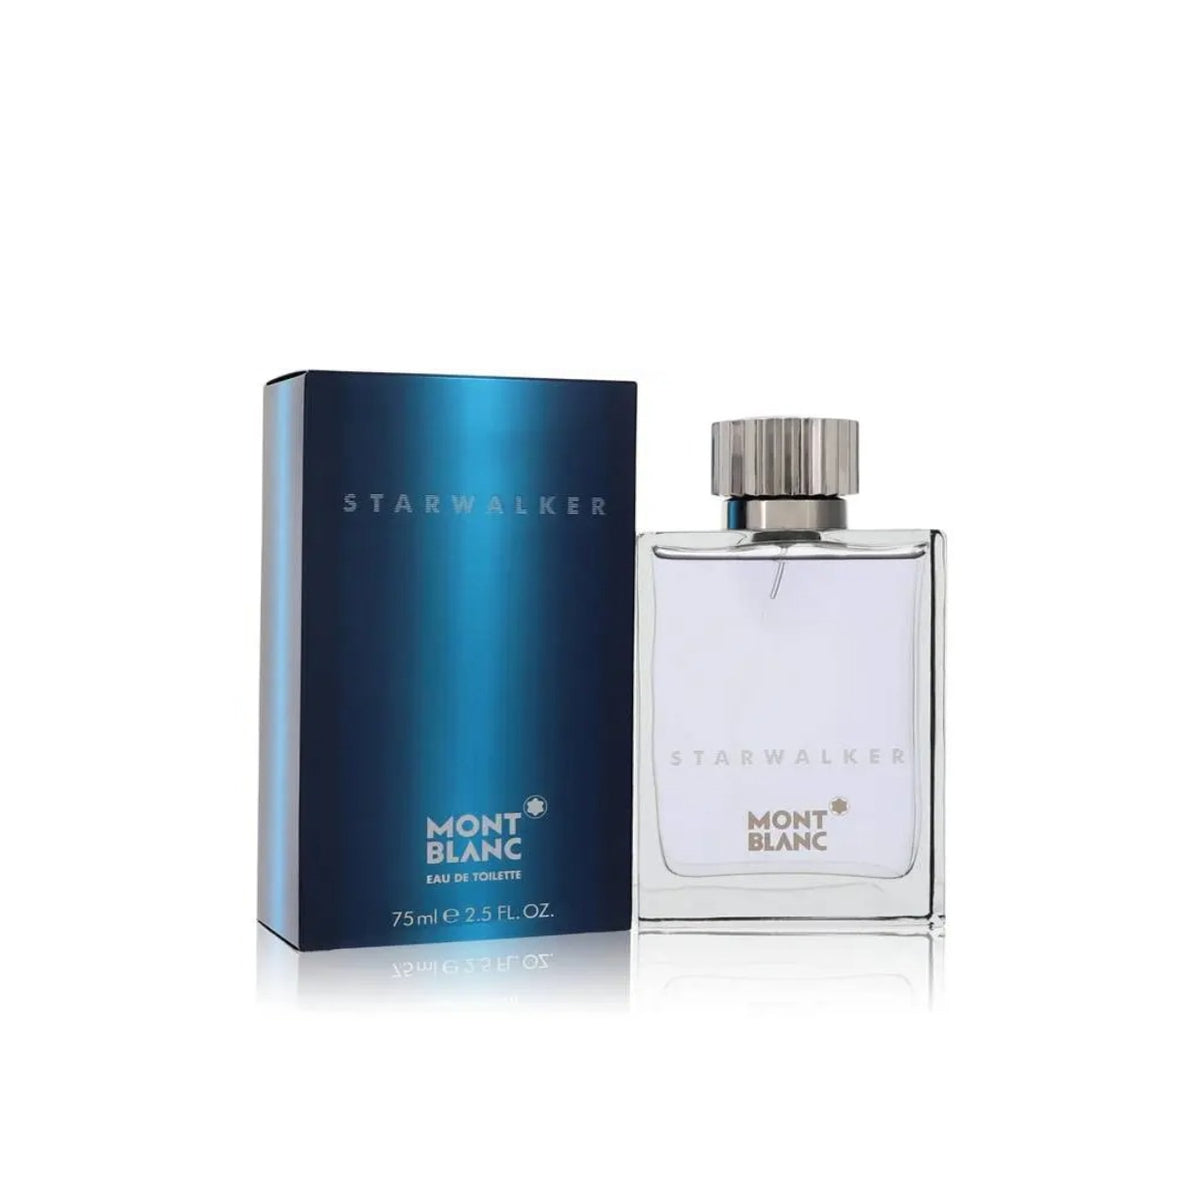 Montblanc Starwalker Cologne Perfume for Men